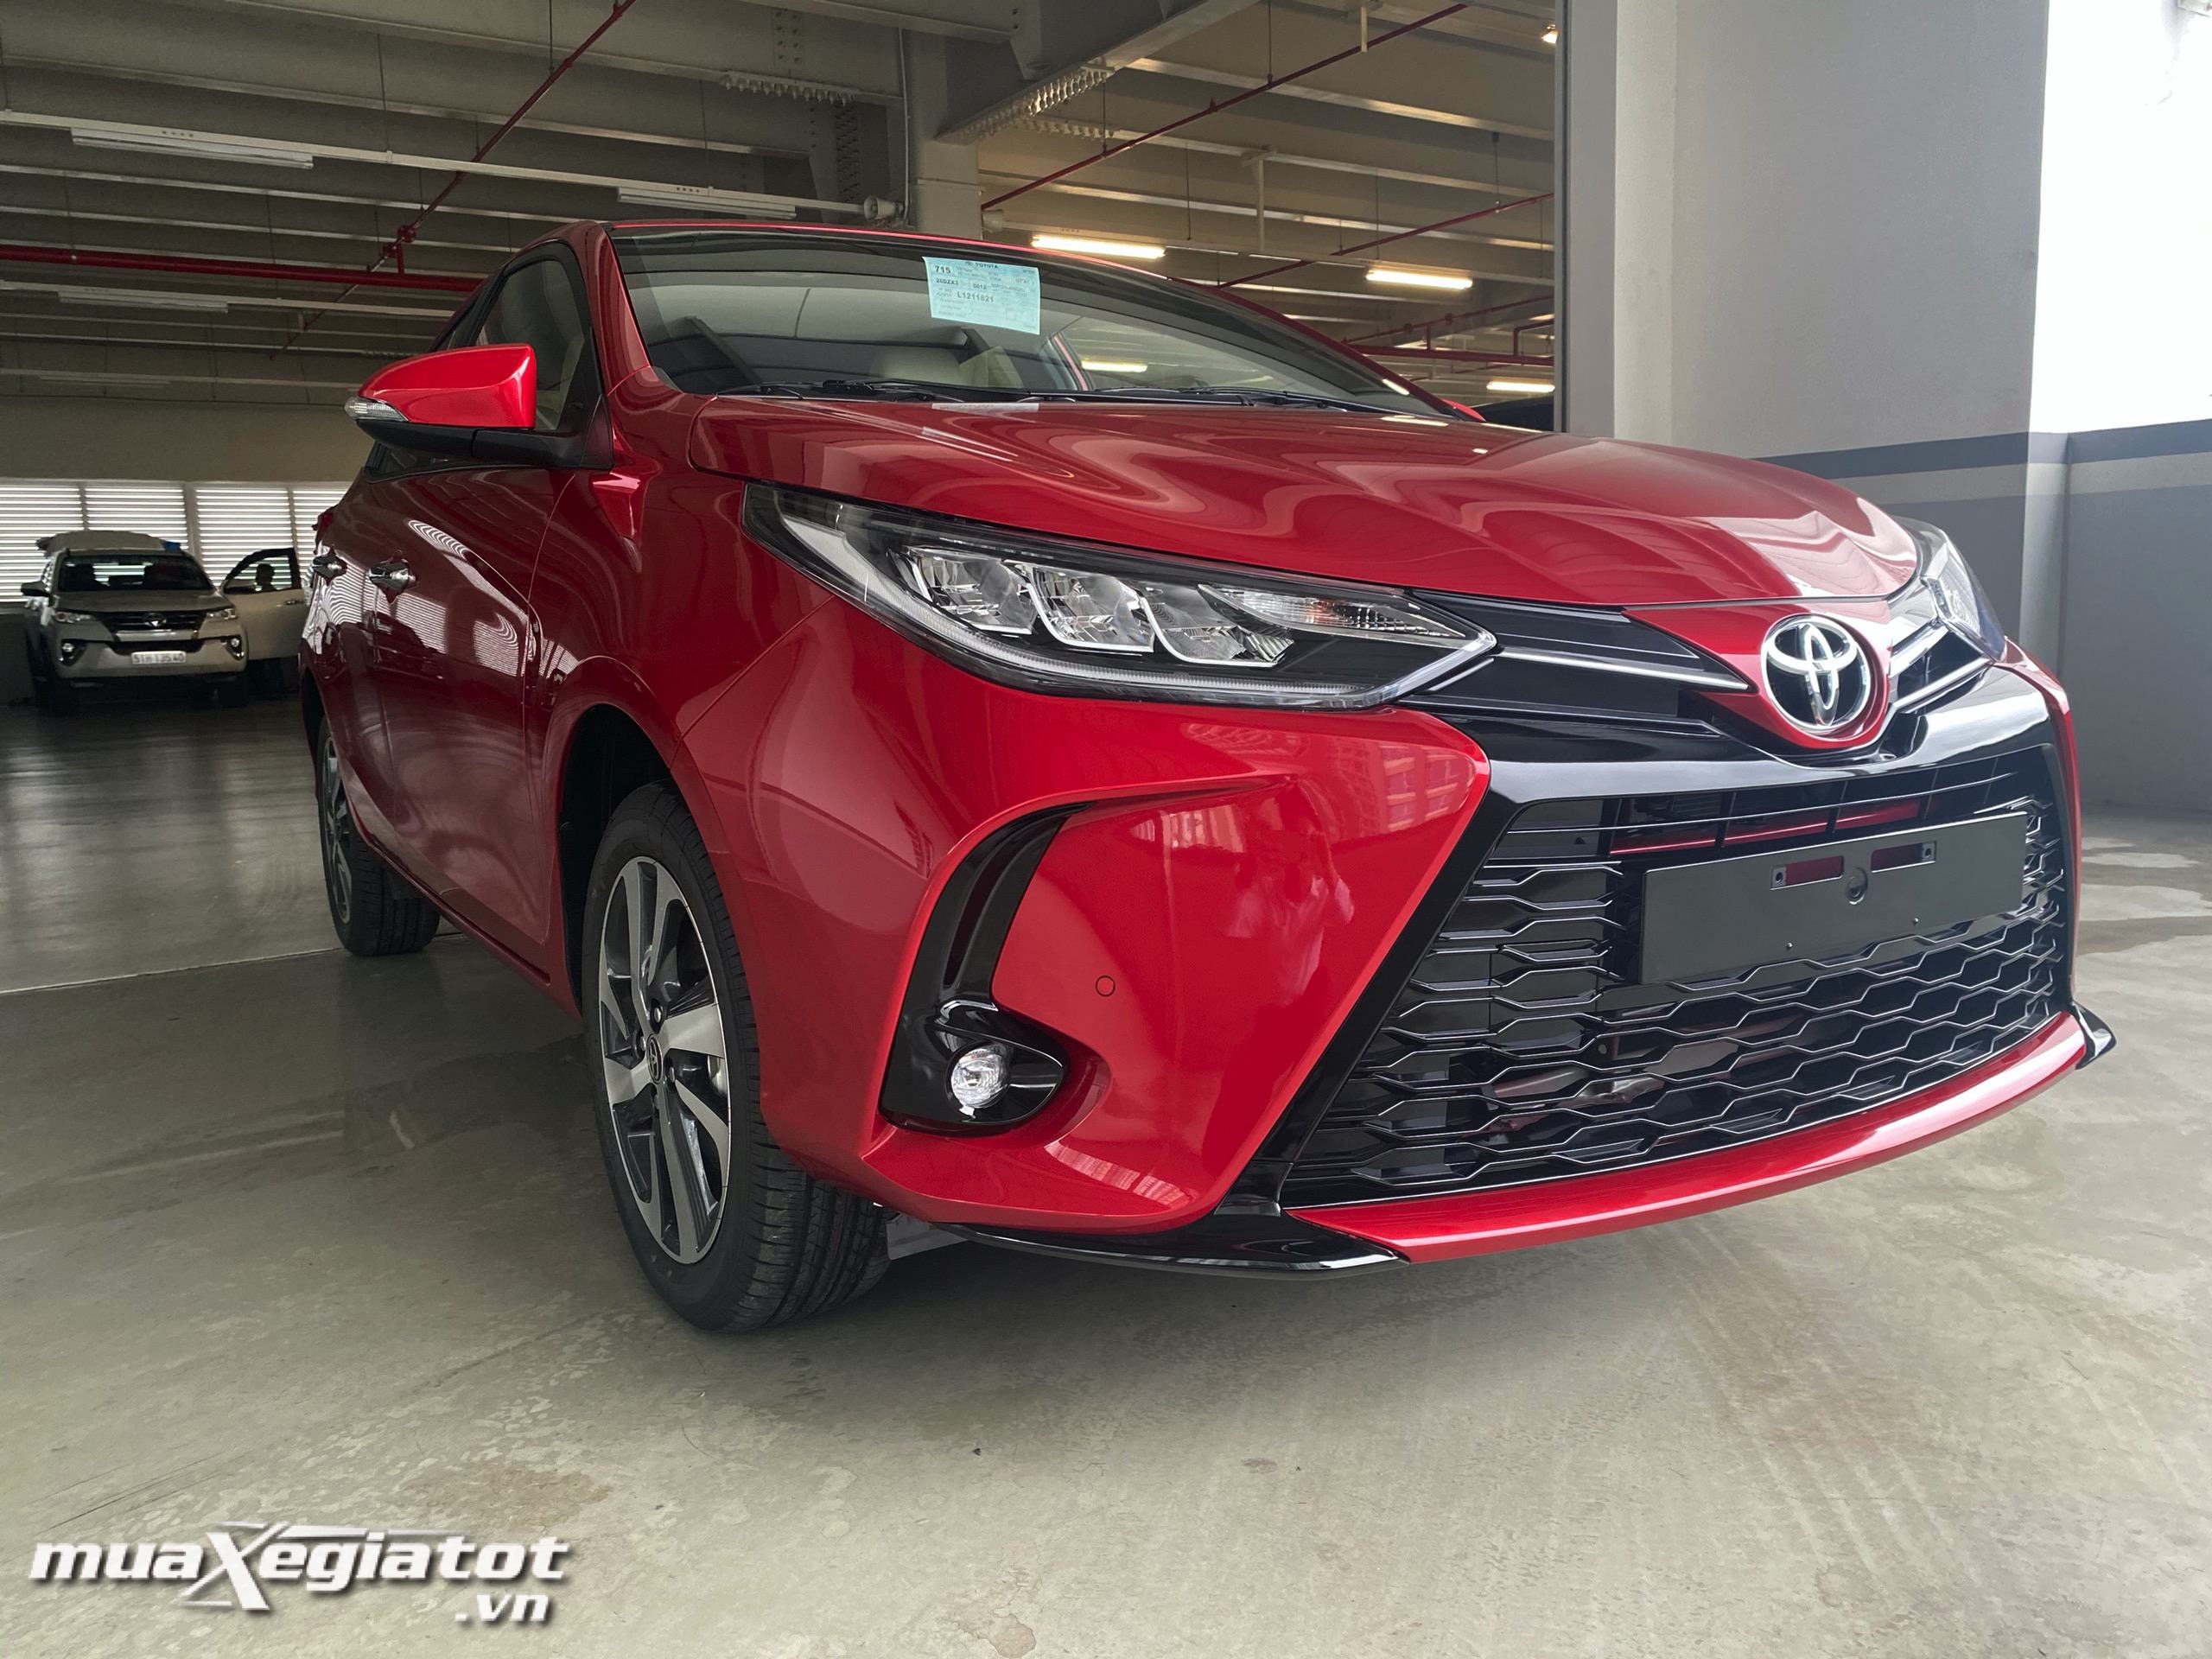 Đánh giá xe Toyota Yaris 2020 nhập khẩu sang trọng